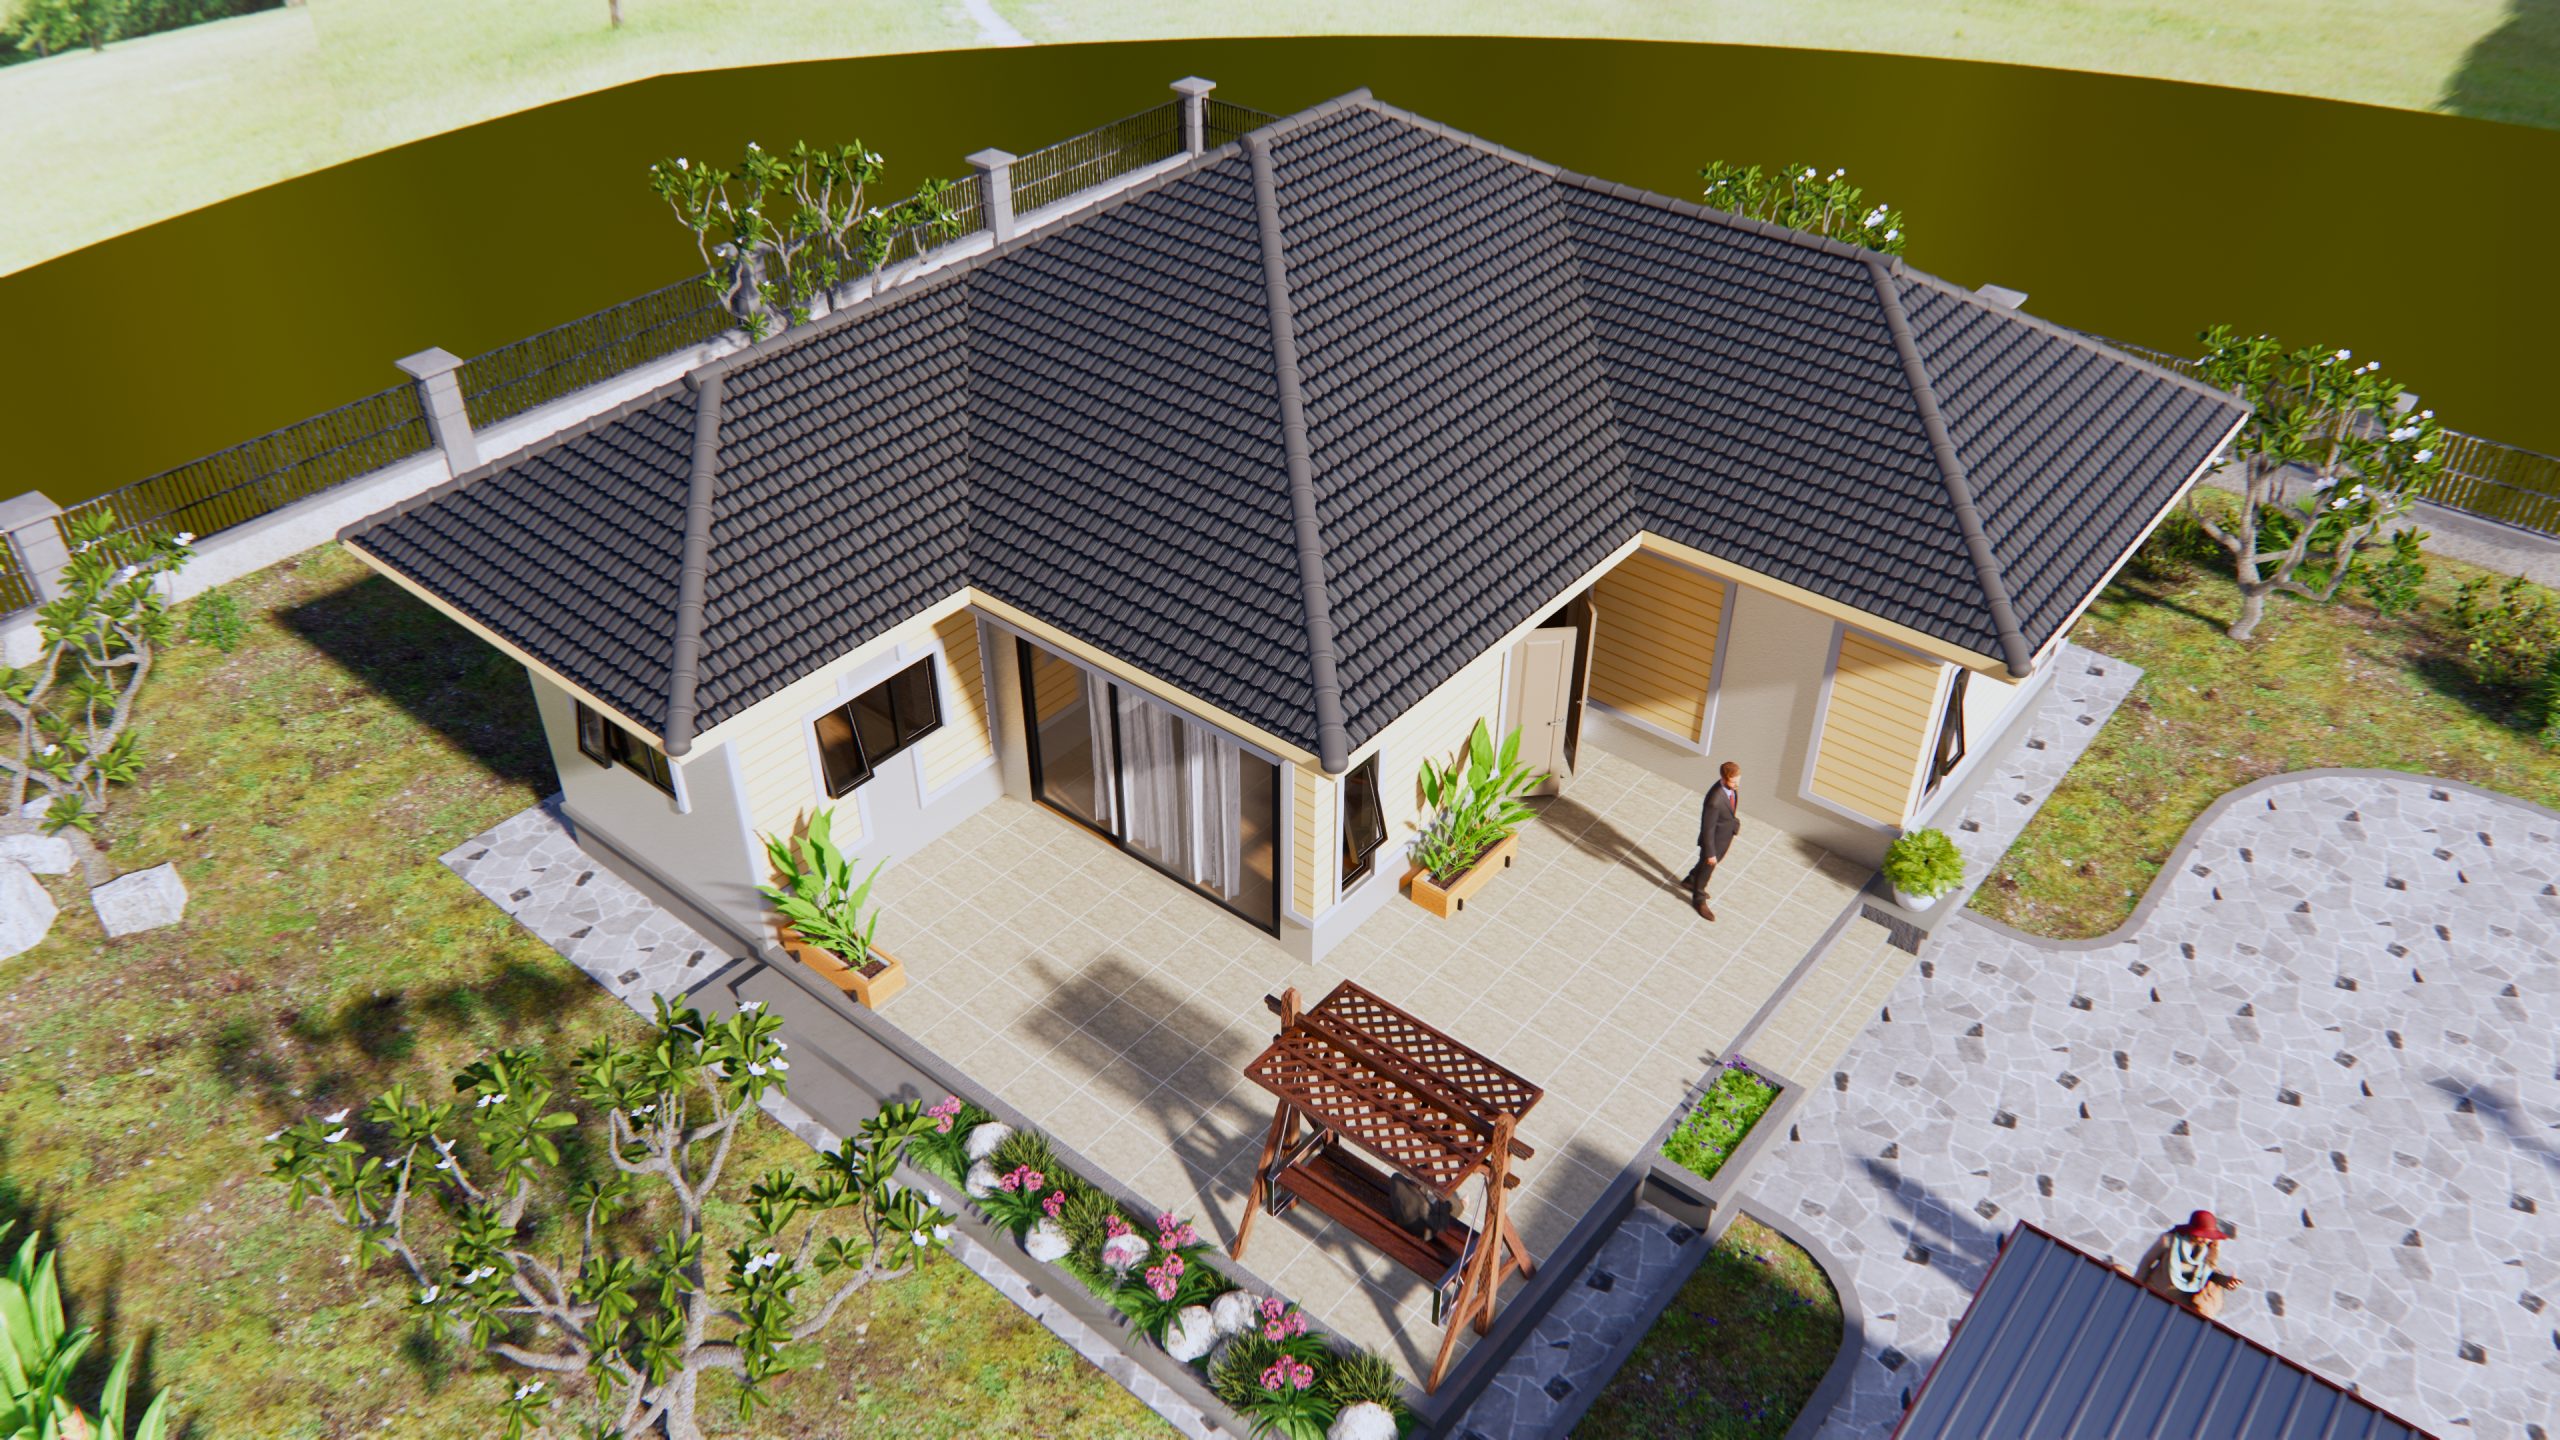 House Design 3d 11.5x10.5 Meter 38x35 Feet 2 Bedrooms Hip roof